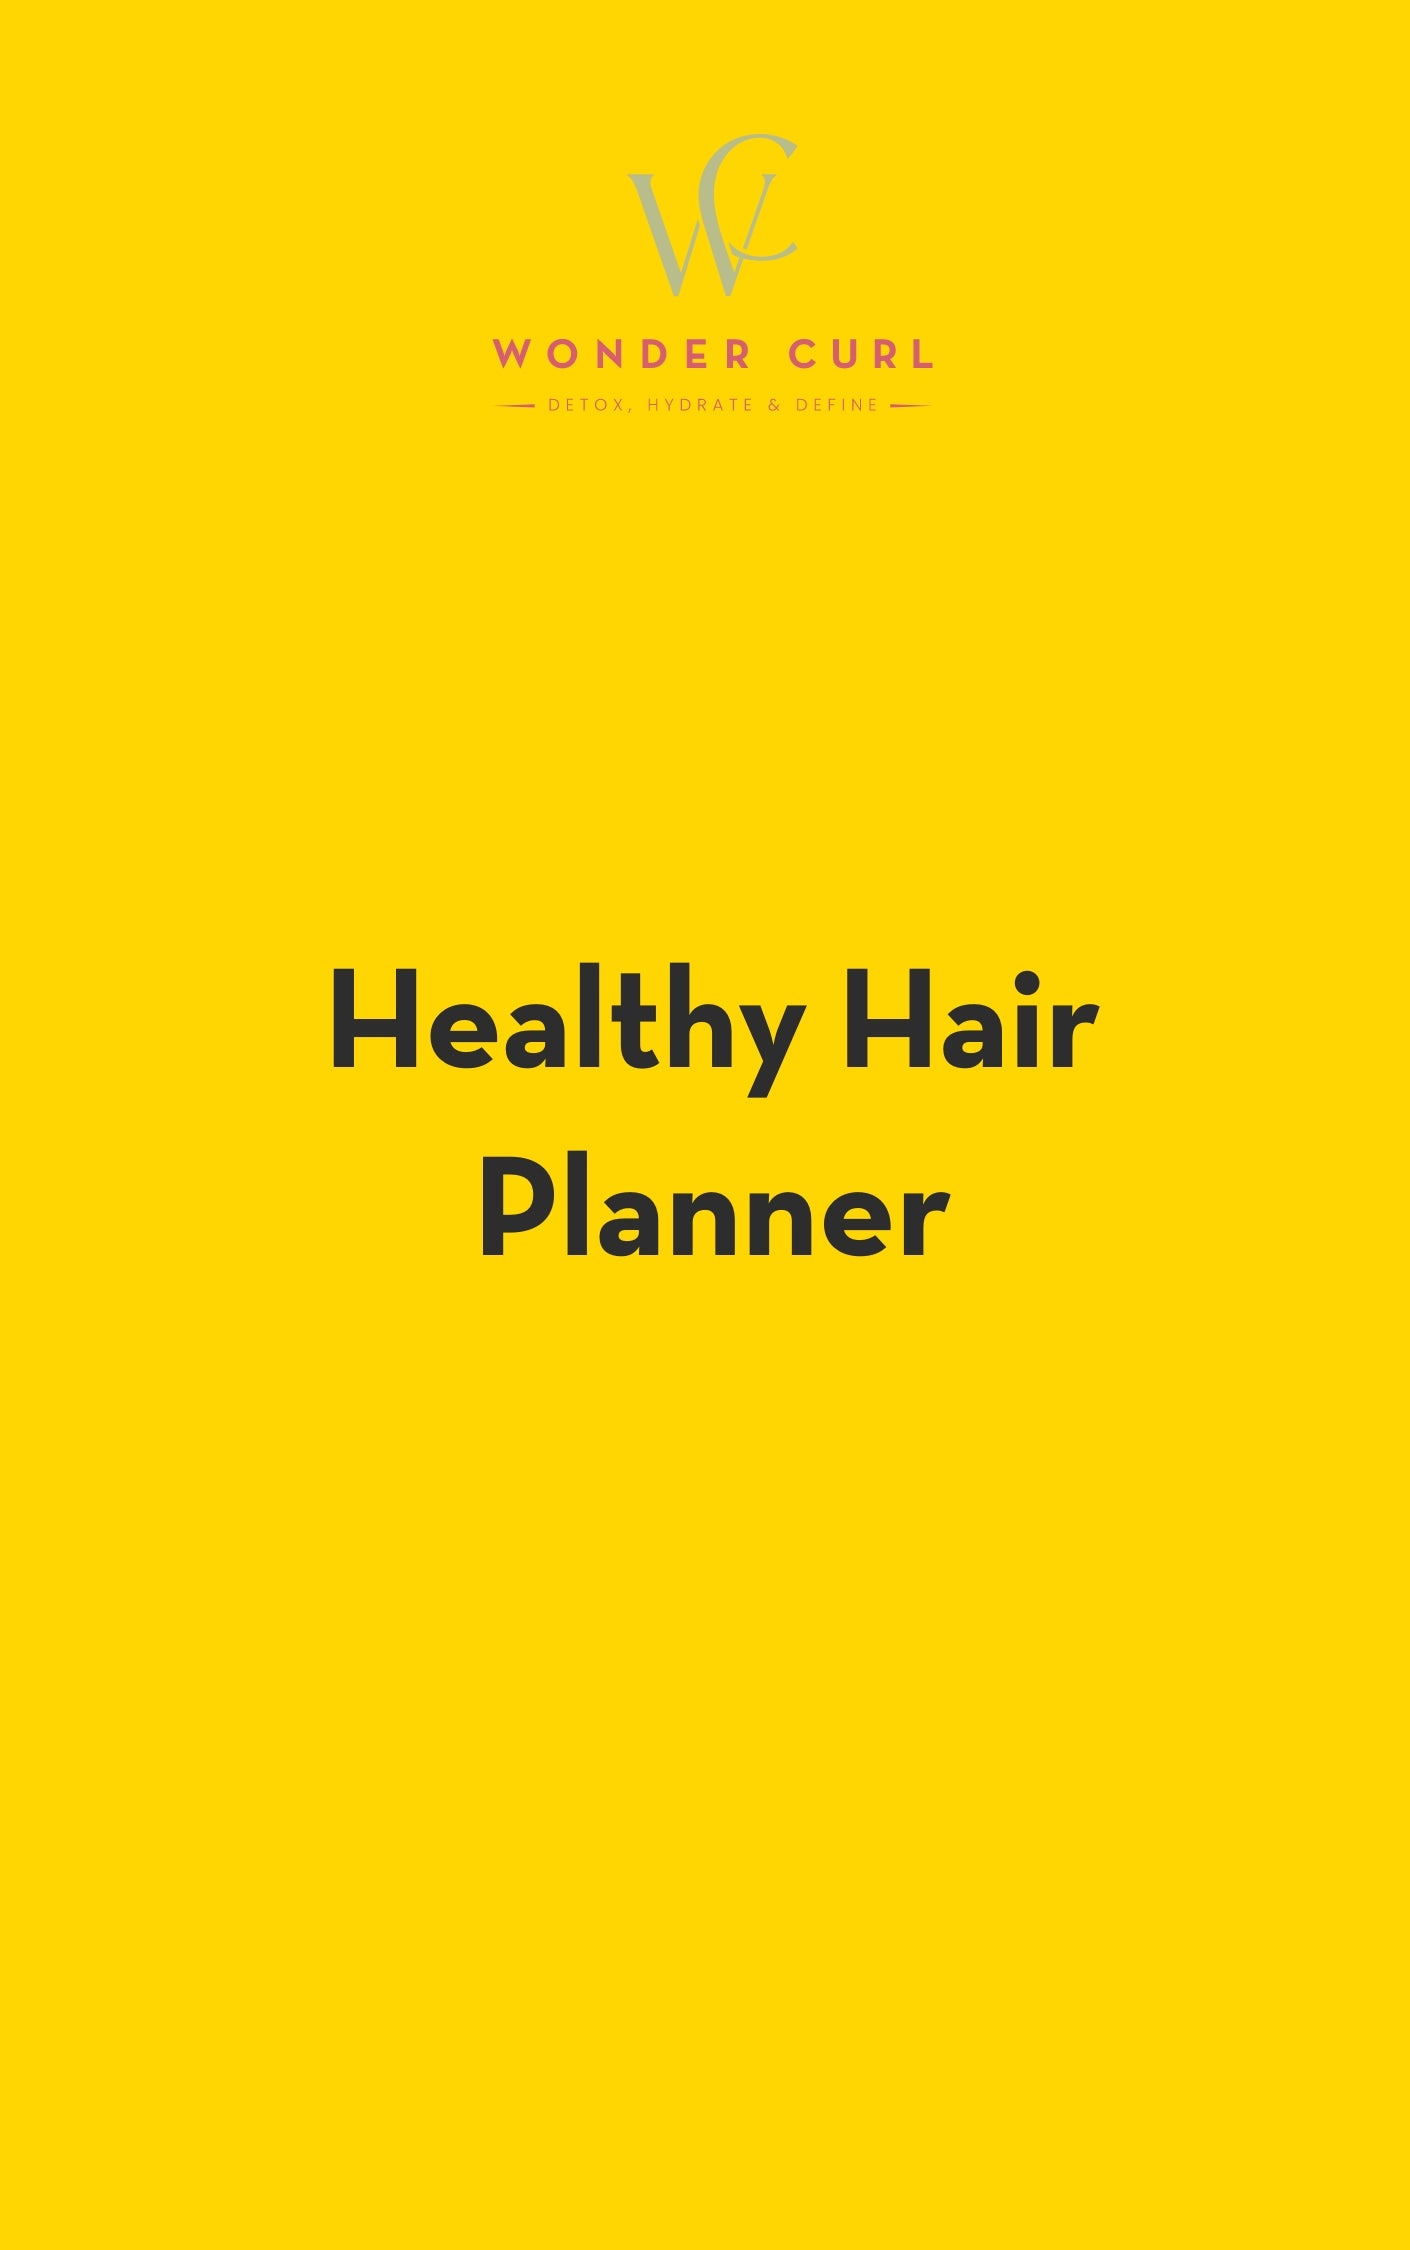 Healthy Hair Planner Digital Download